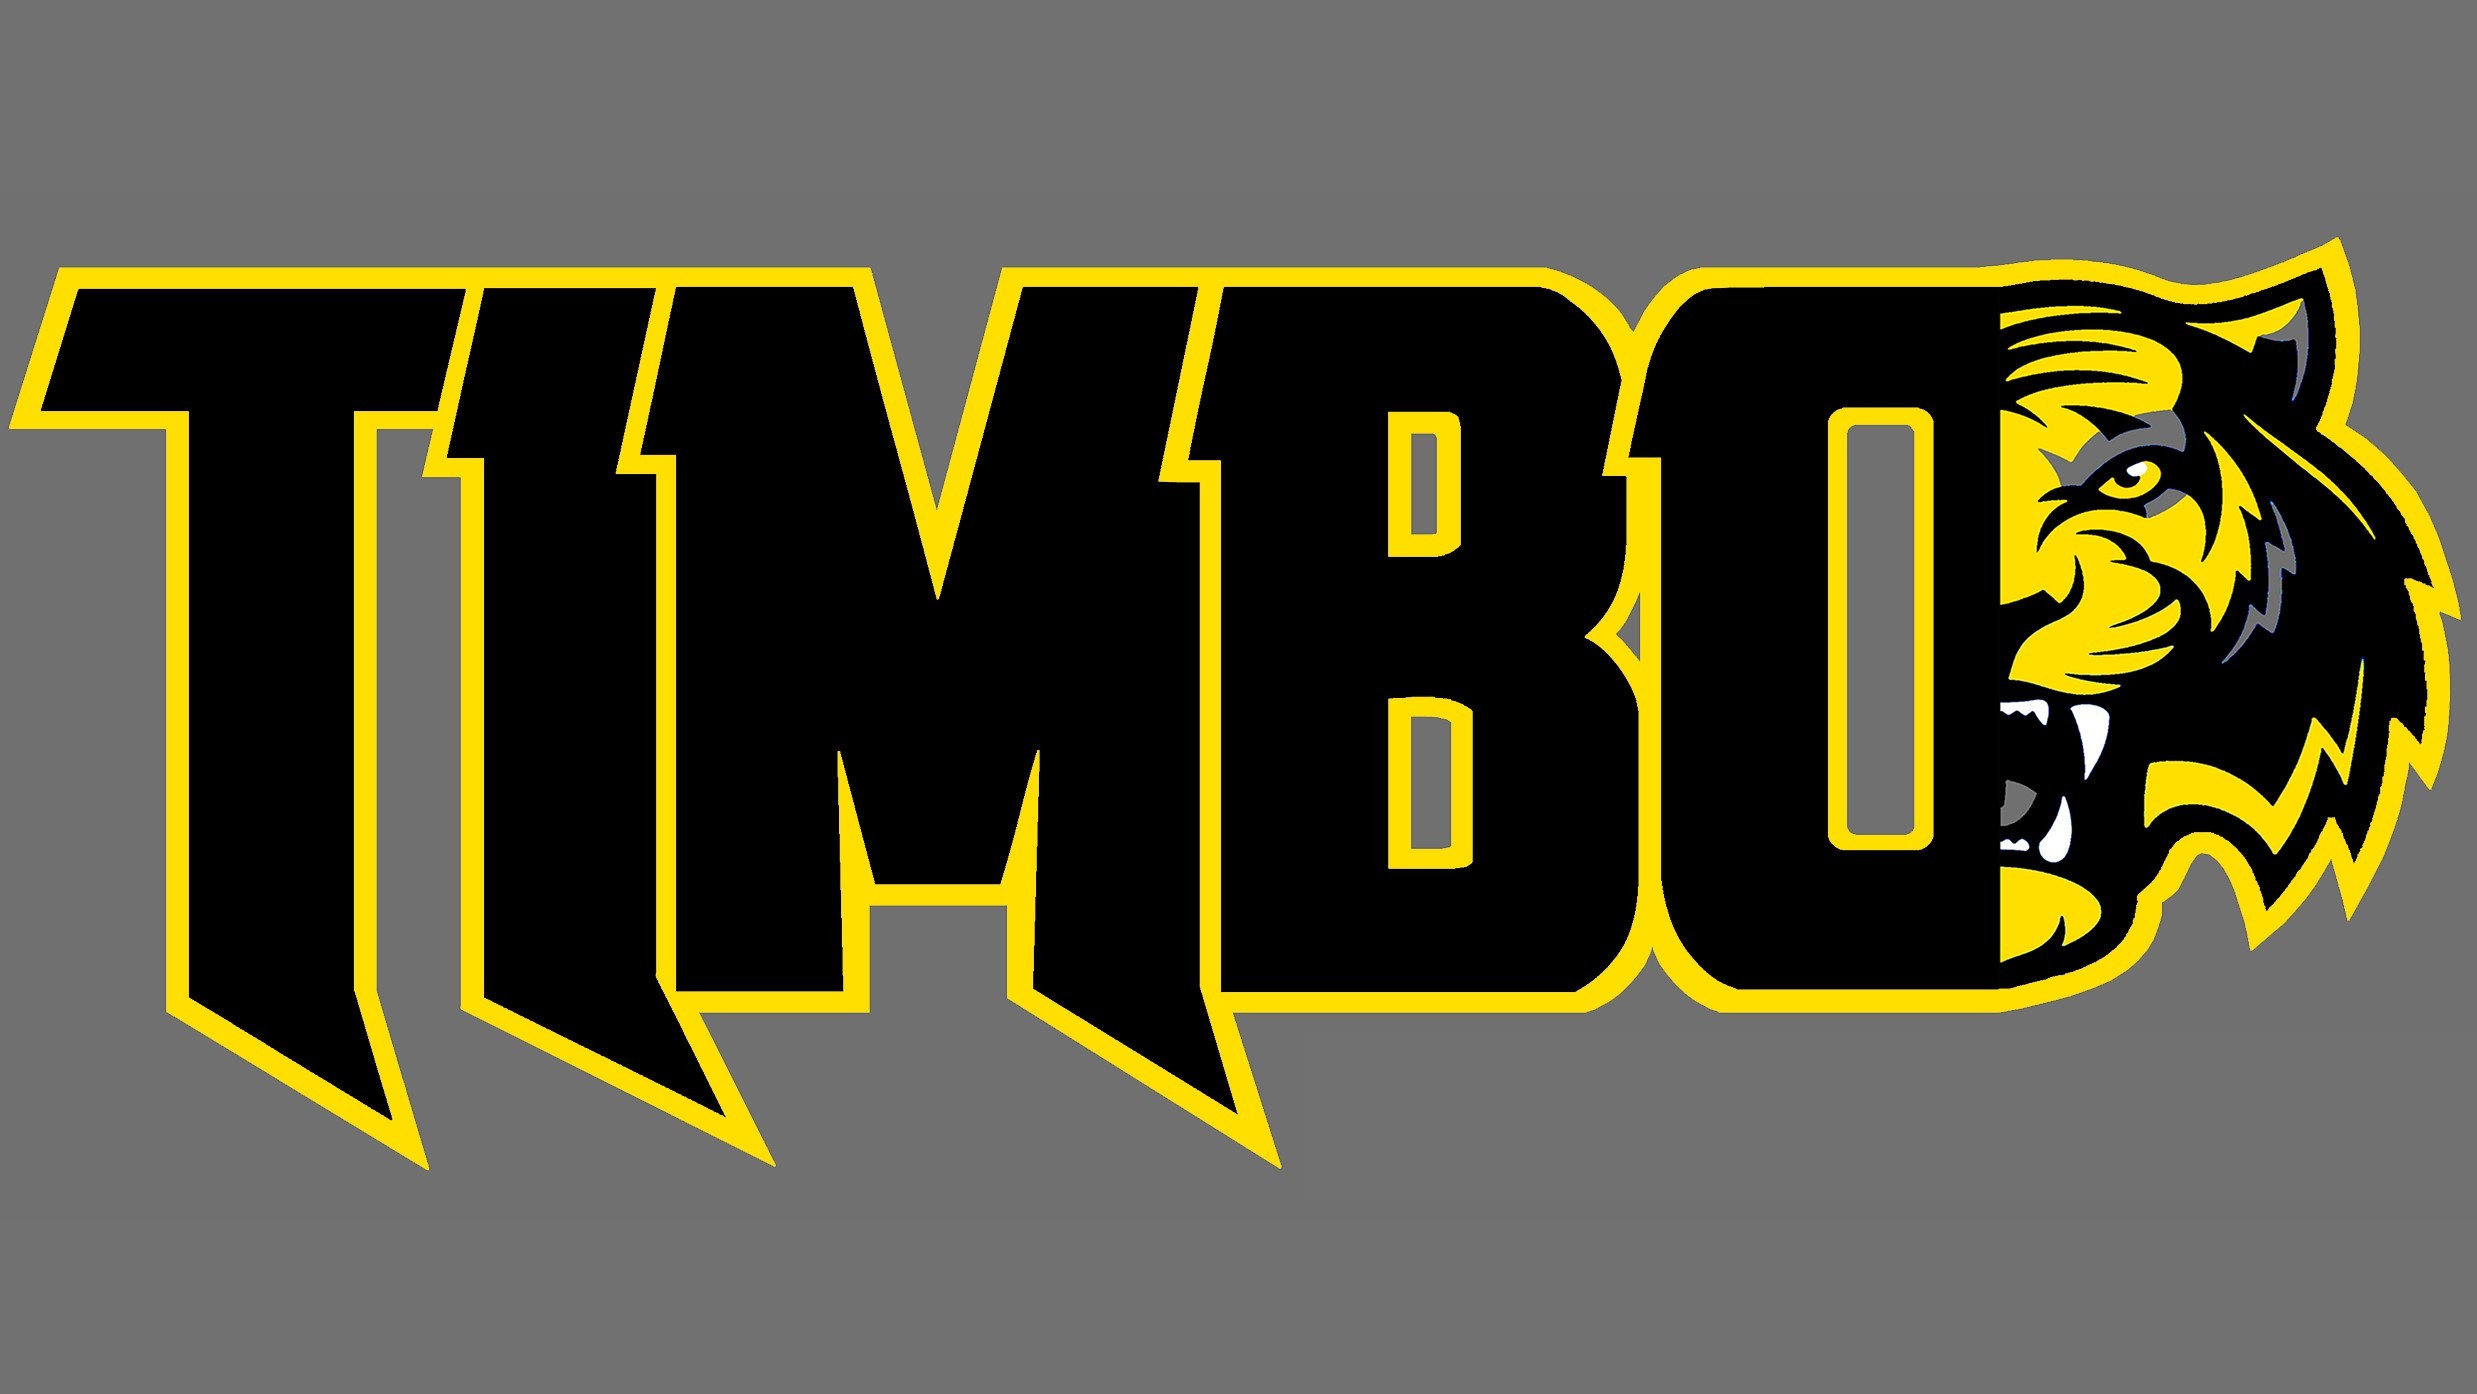 Timbo Logo